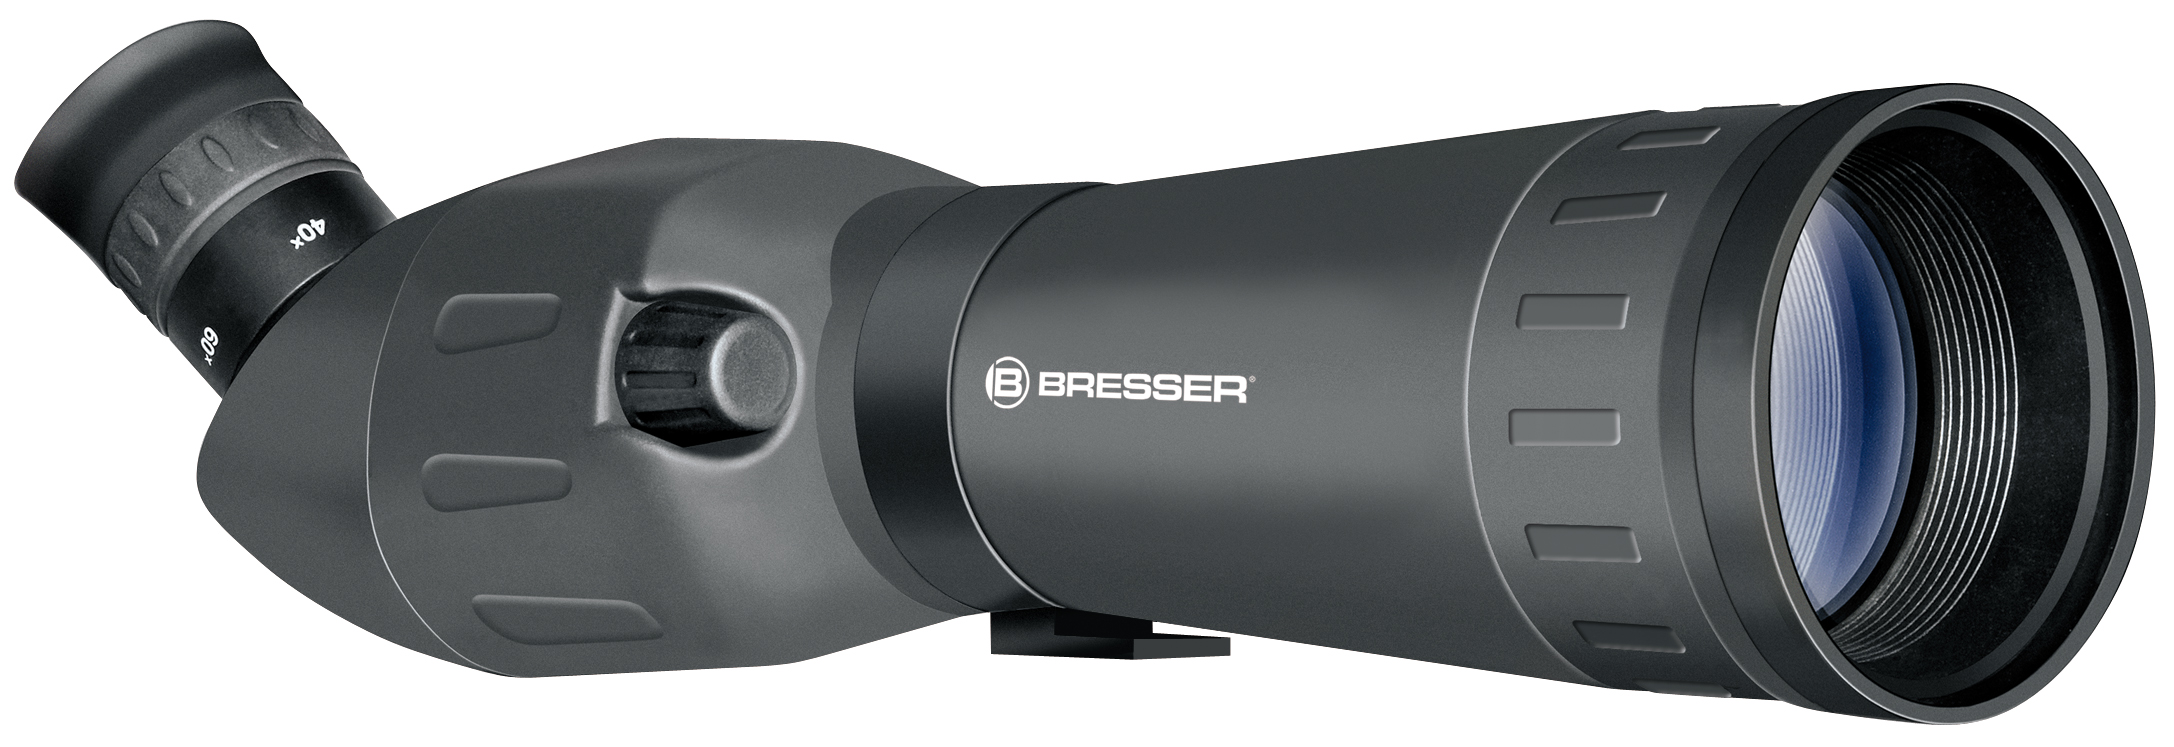 BRESSER Zoom-Spektiv 20-60x60 inkl. Smartphone-Halterung